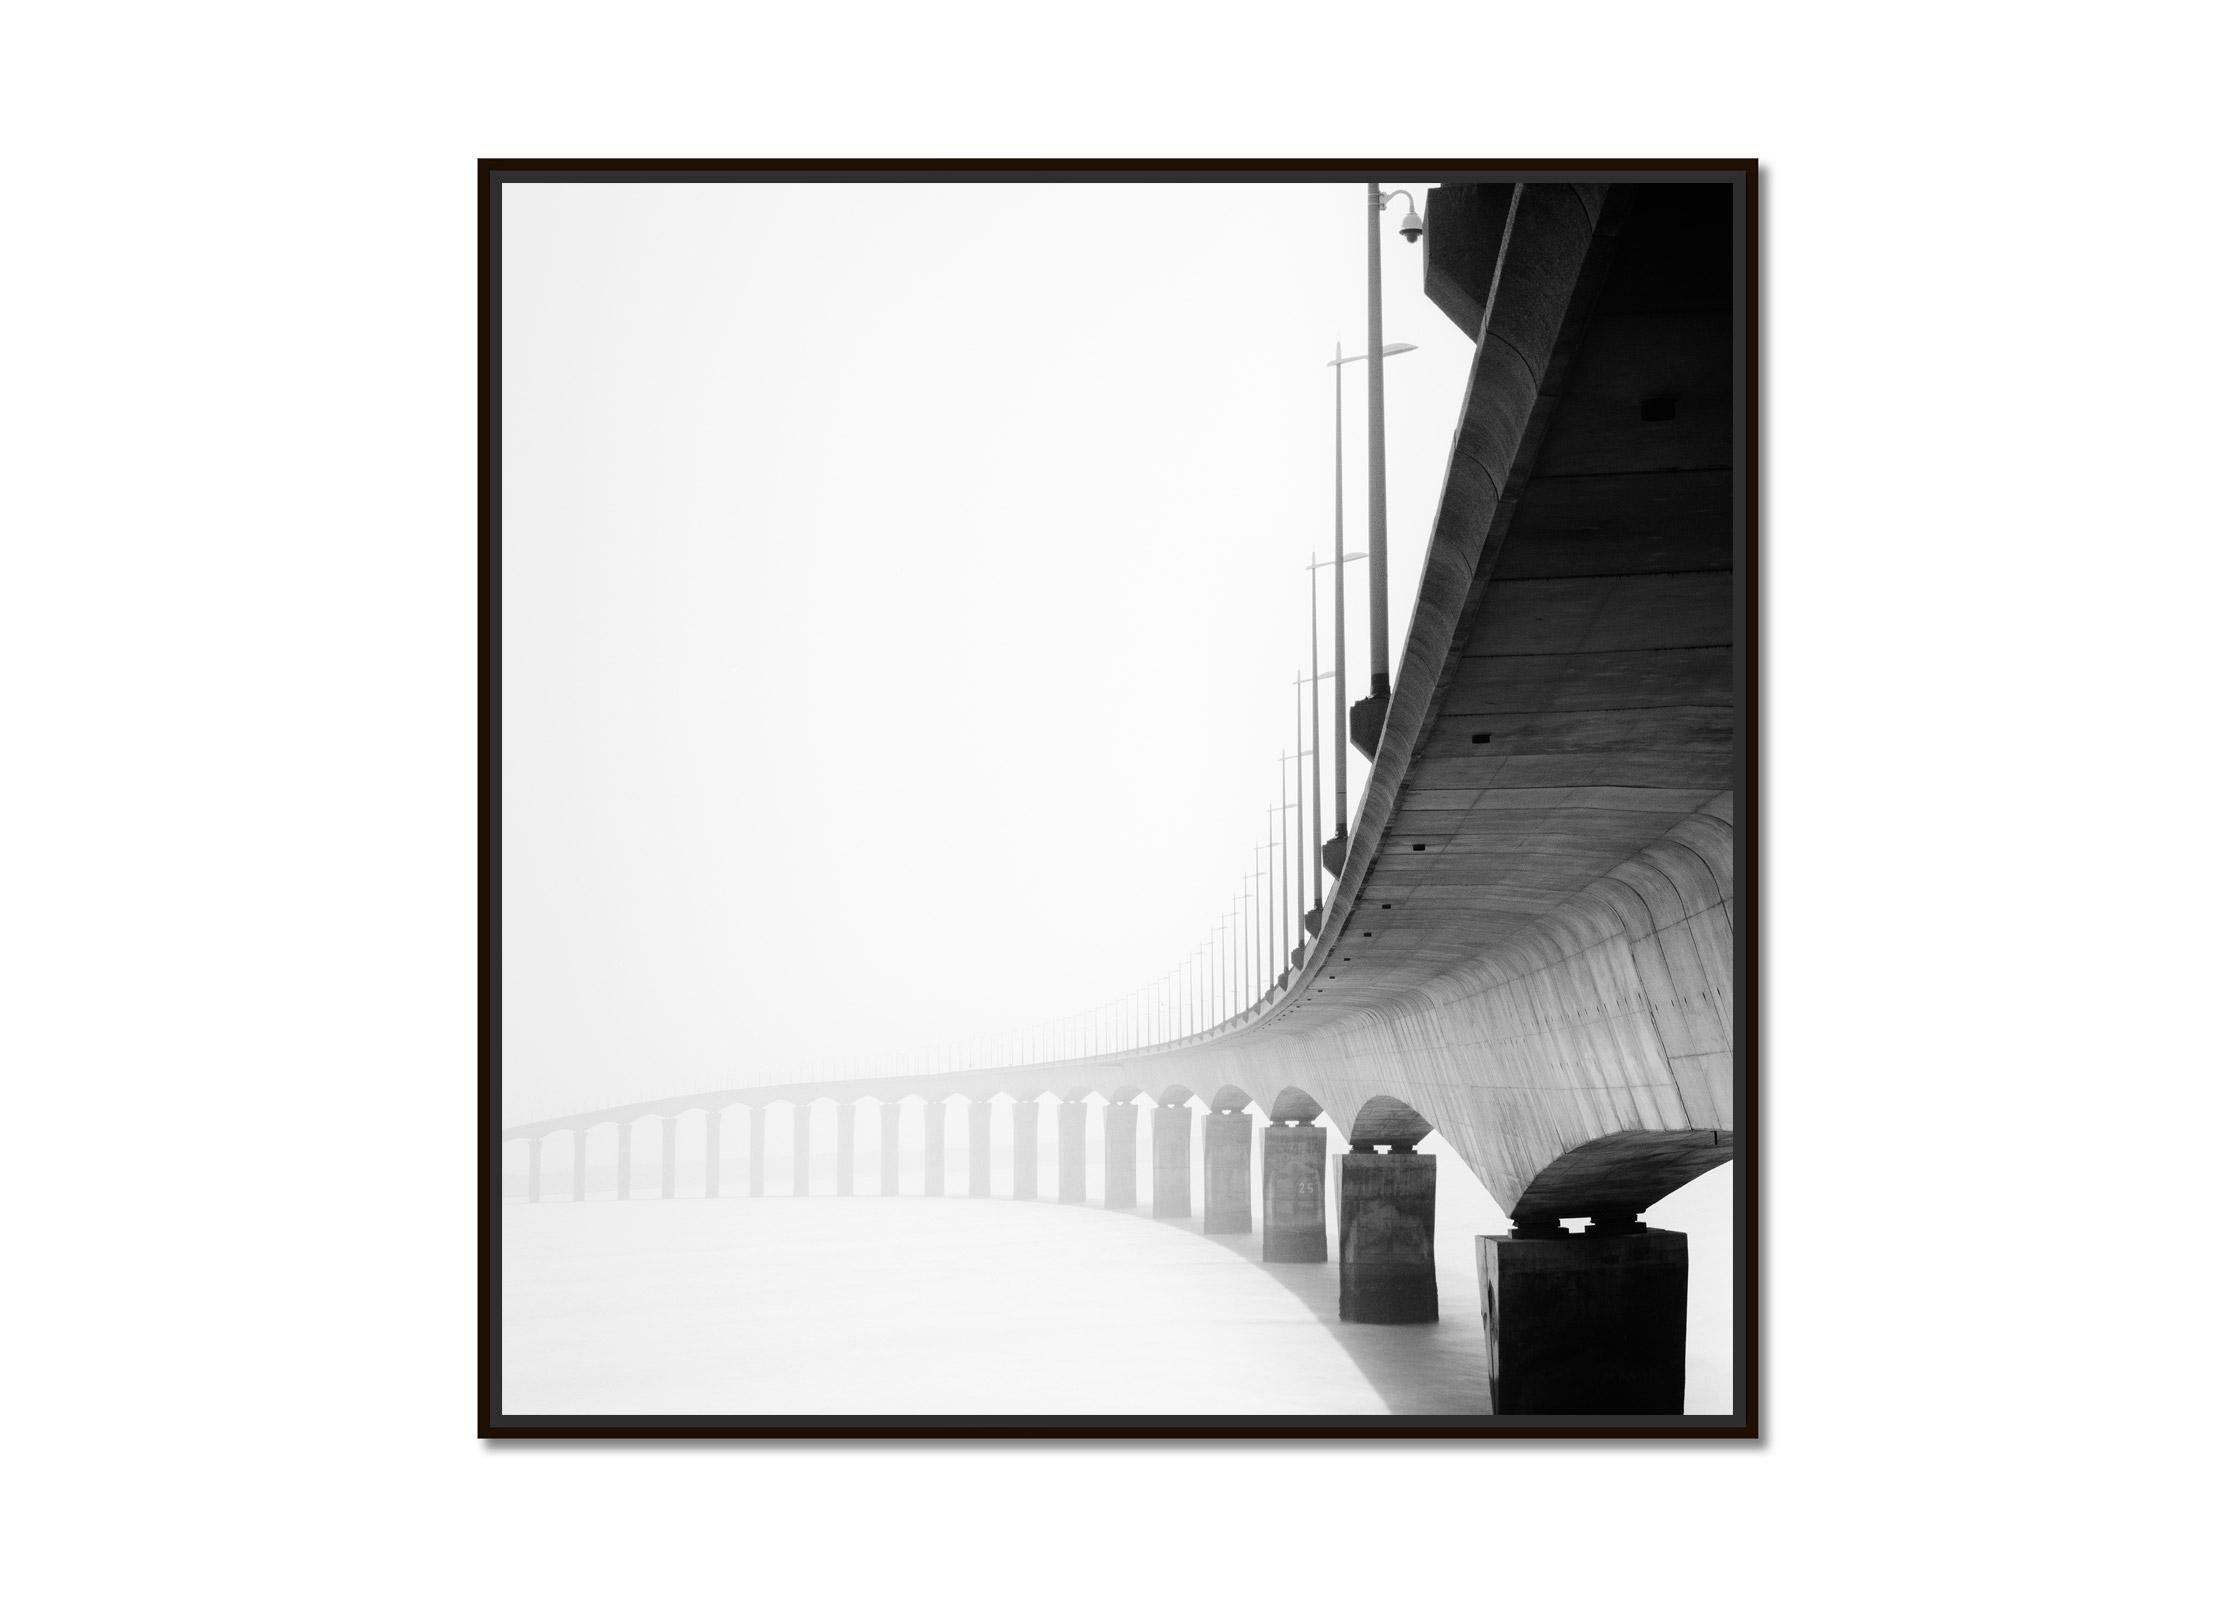 le de Re Bridge, architectural detail, France, black white landscape photography - Photograph by Gerald Berghammer